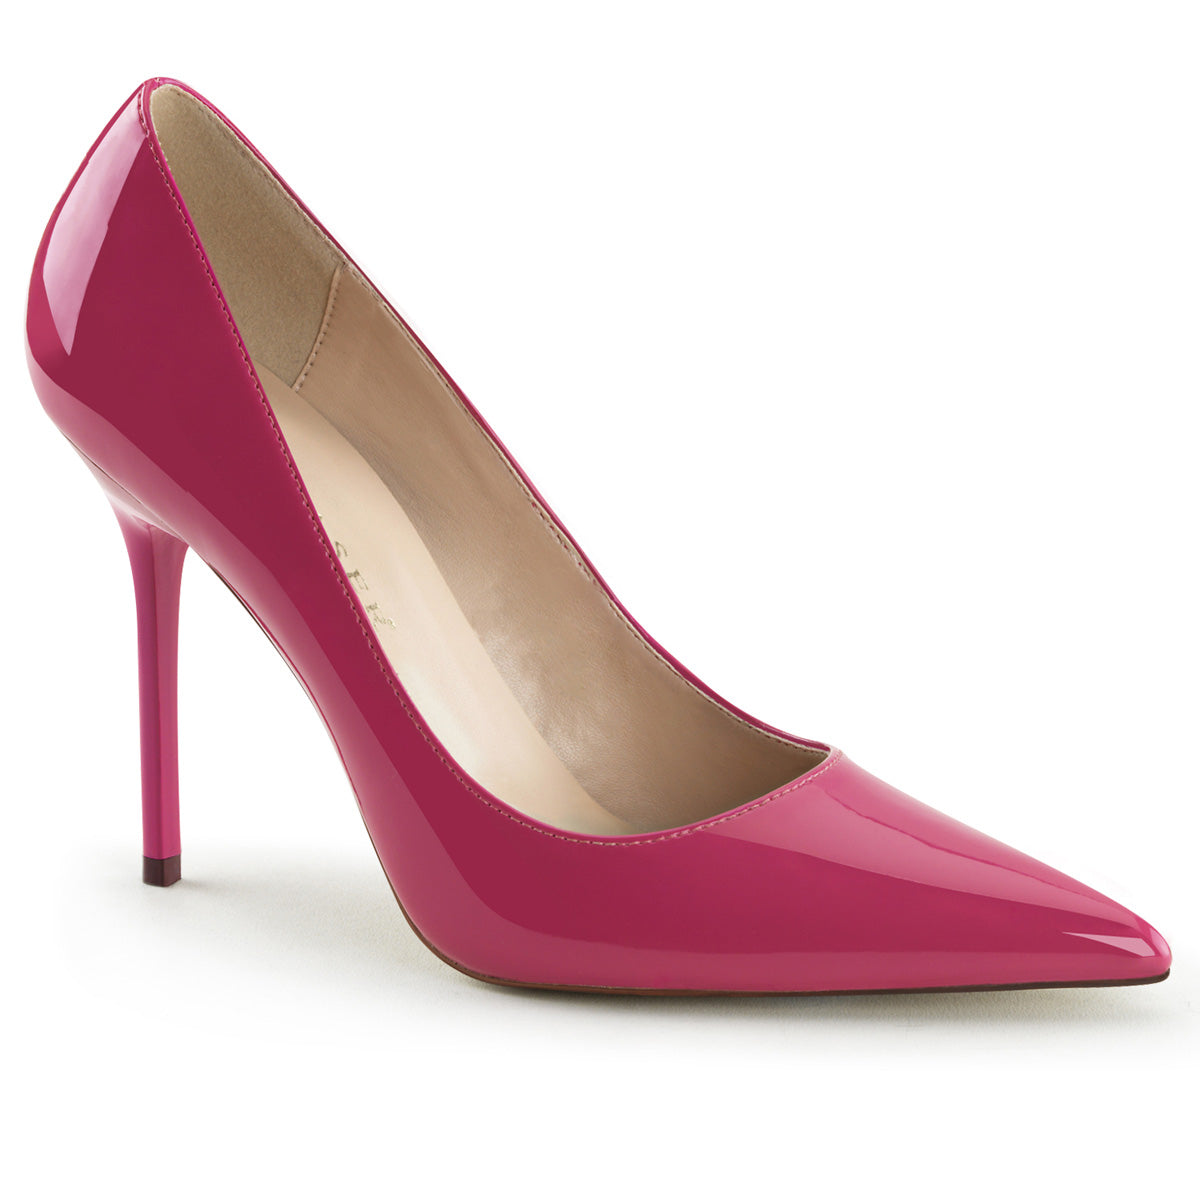 Classique-20 Tooler 4 "каблука горячая розовая патентная патентная обувь